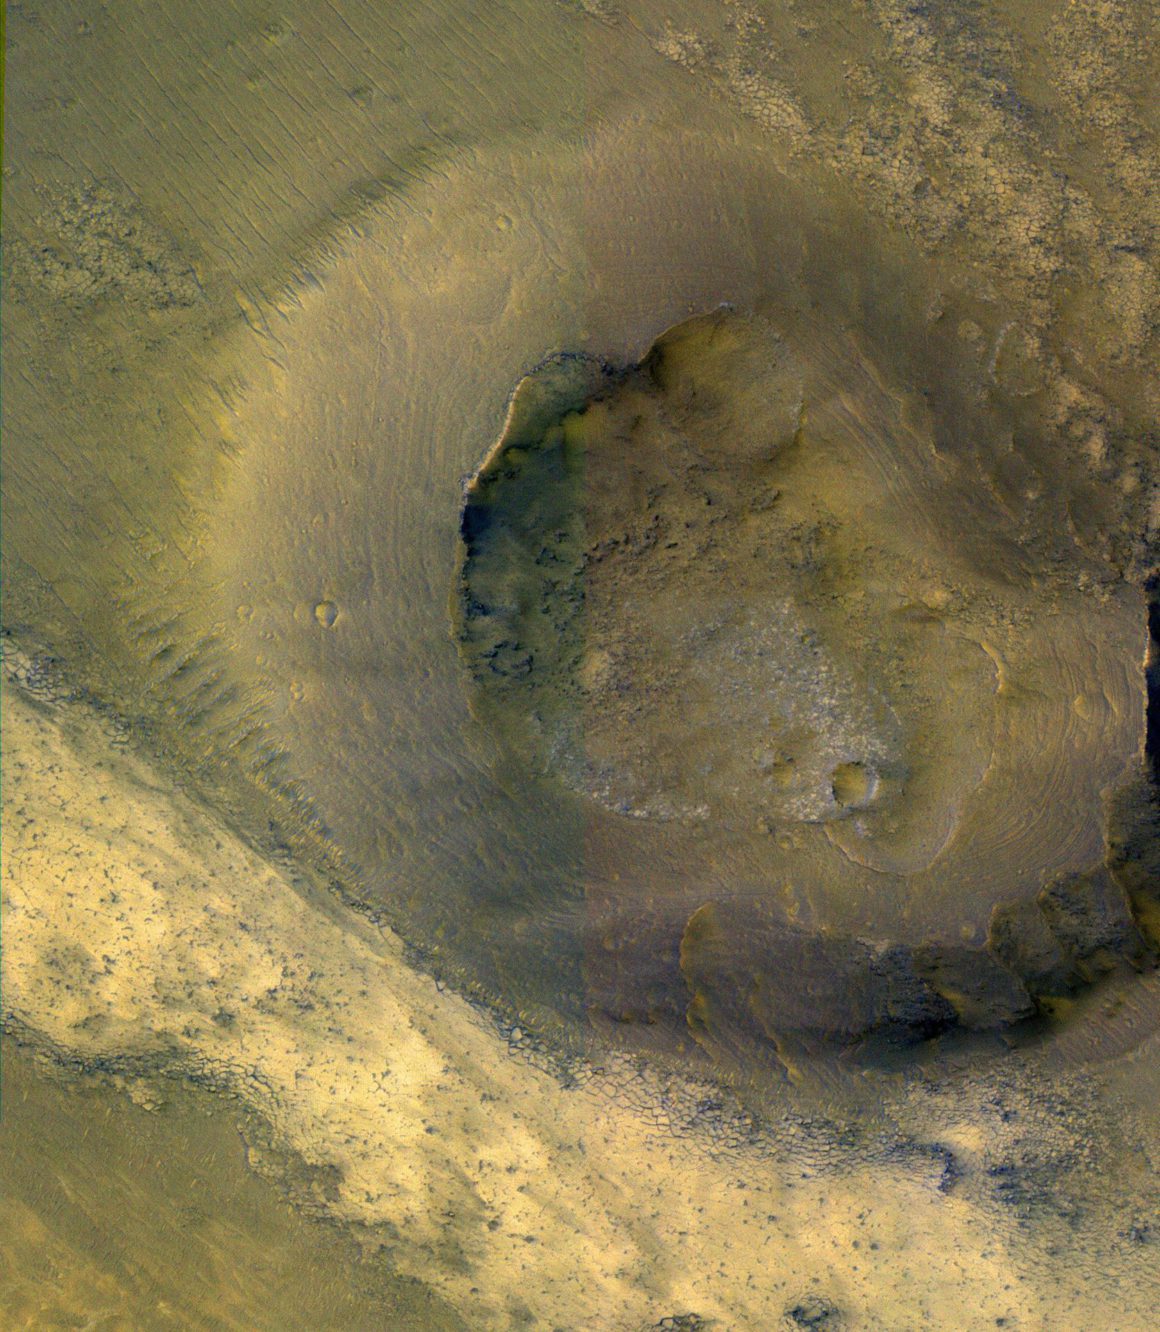 Mud volcanoes on Mars